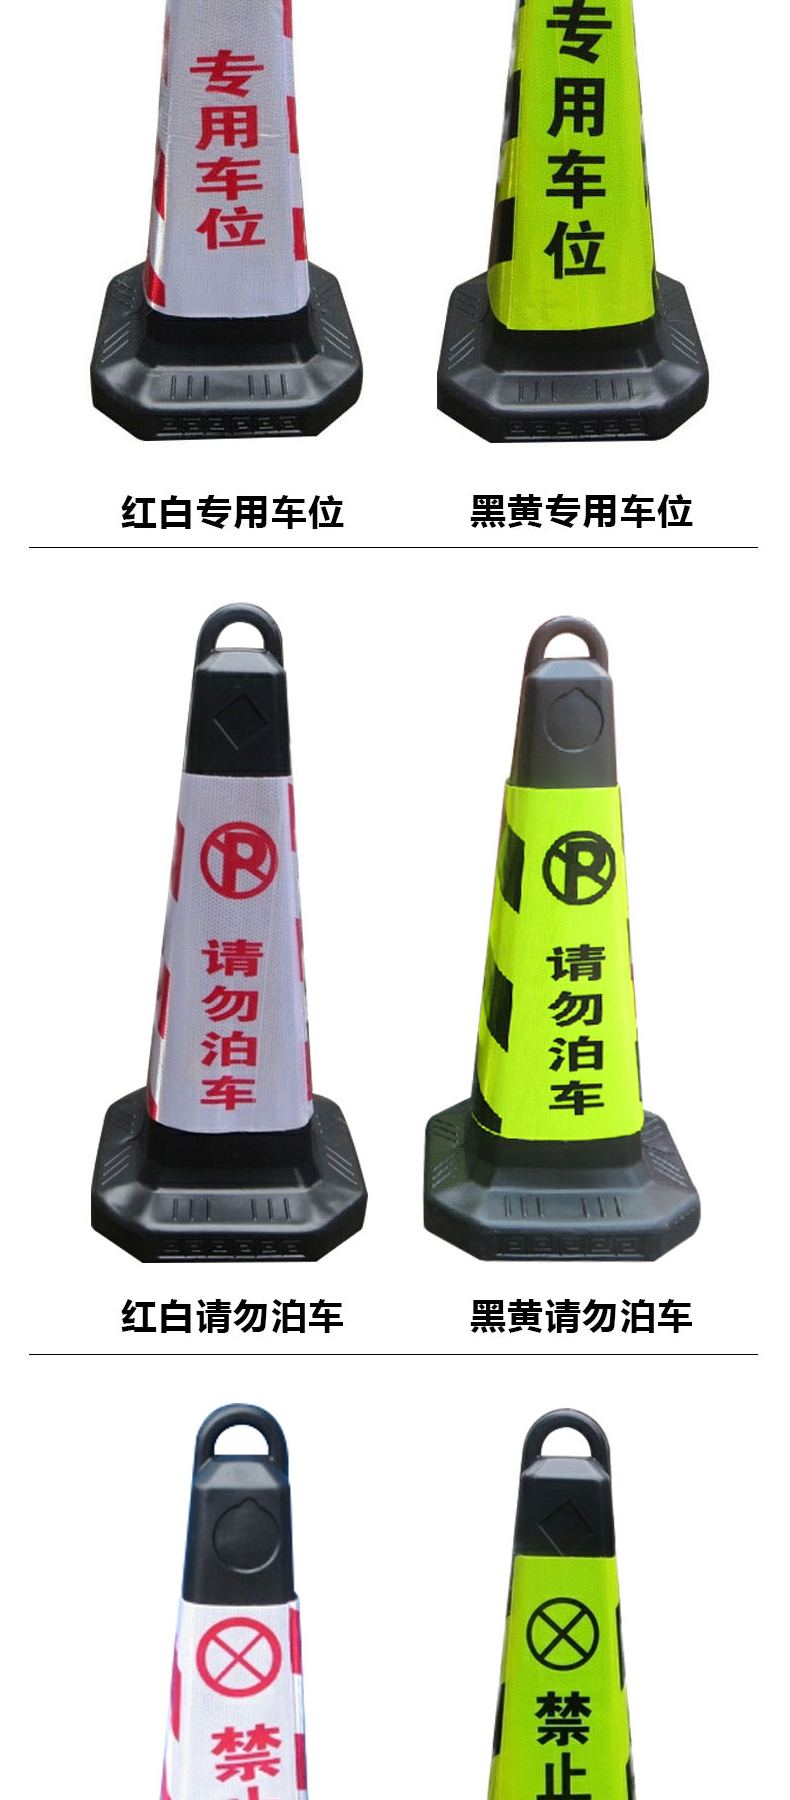 谋福 CNMF 塑料反光路锥 雪糕筒(请勿泊车) 8718 (黑黄色)